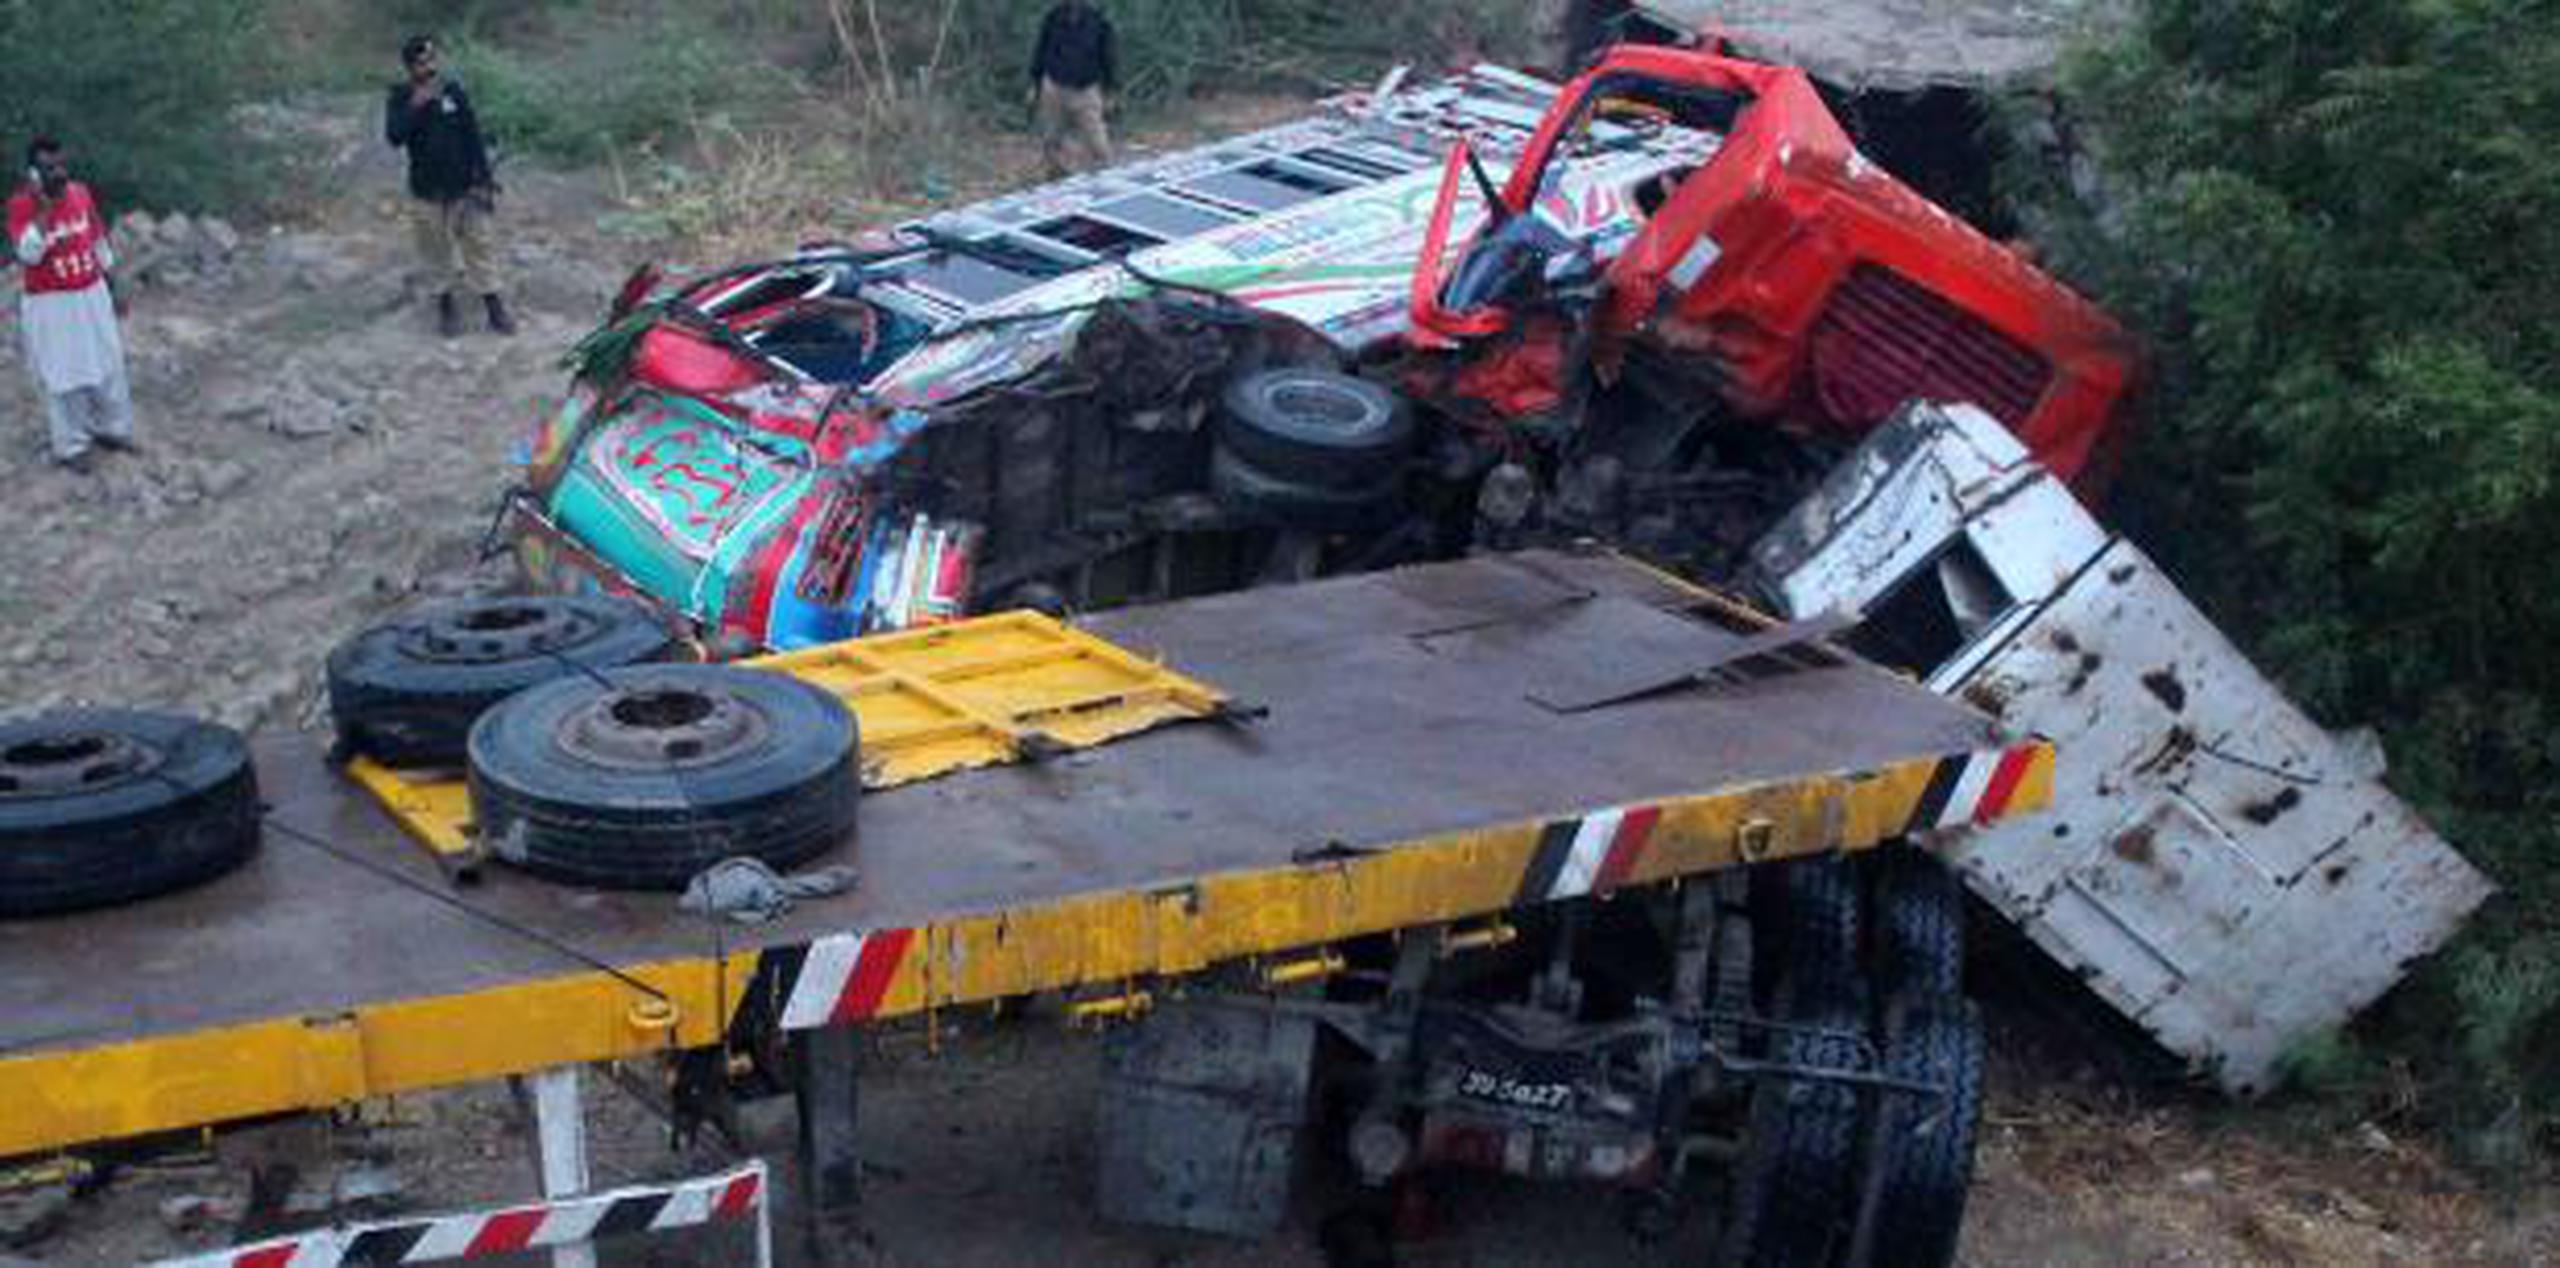 La negligencia del conductor del camión parece haber sido la causa del choque. (AP)

